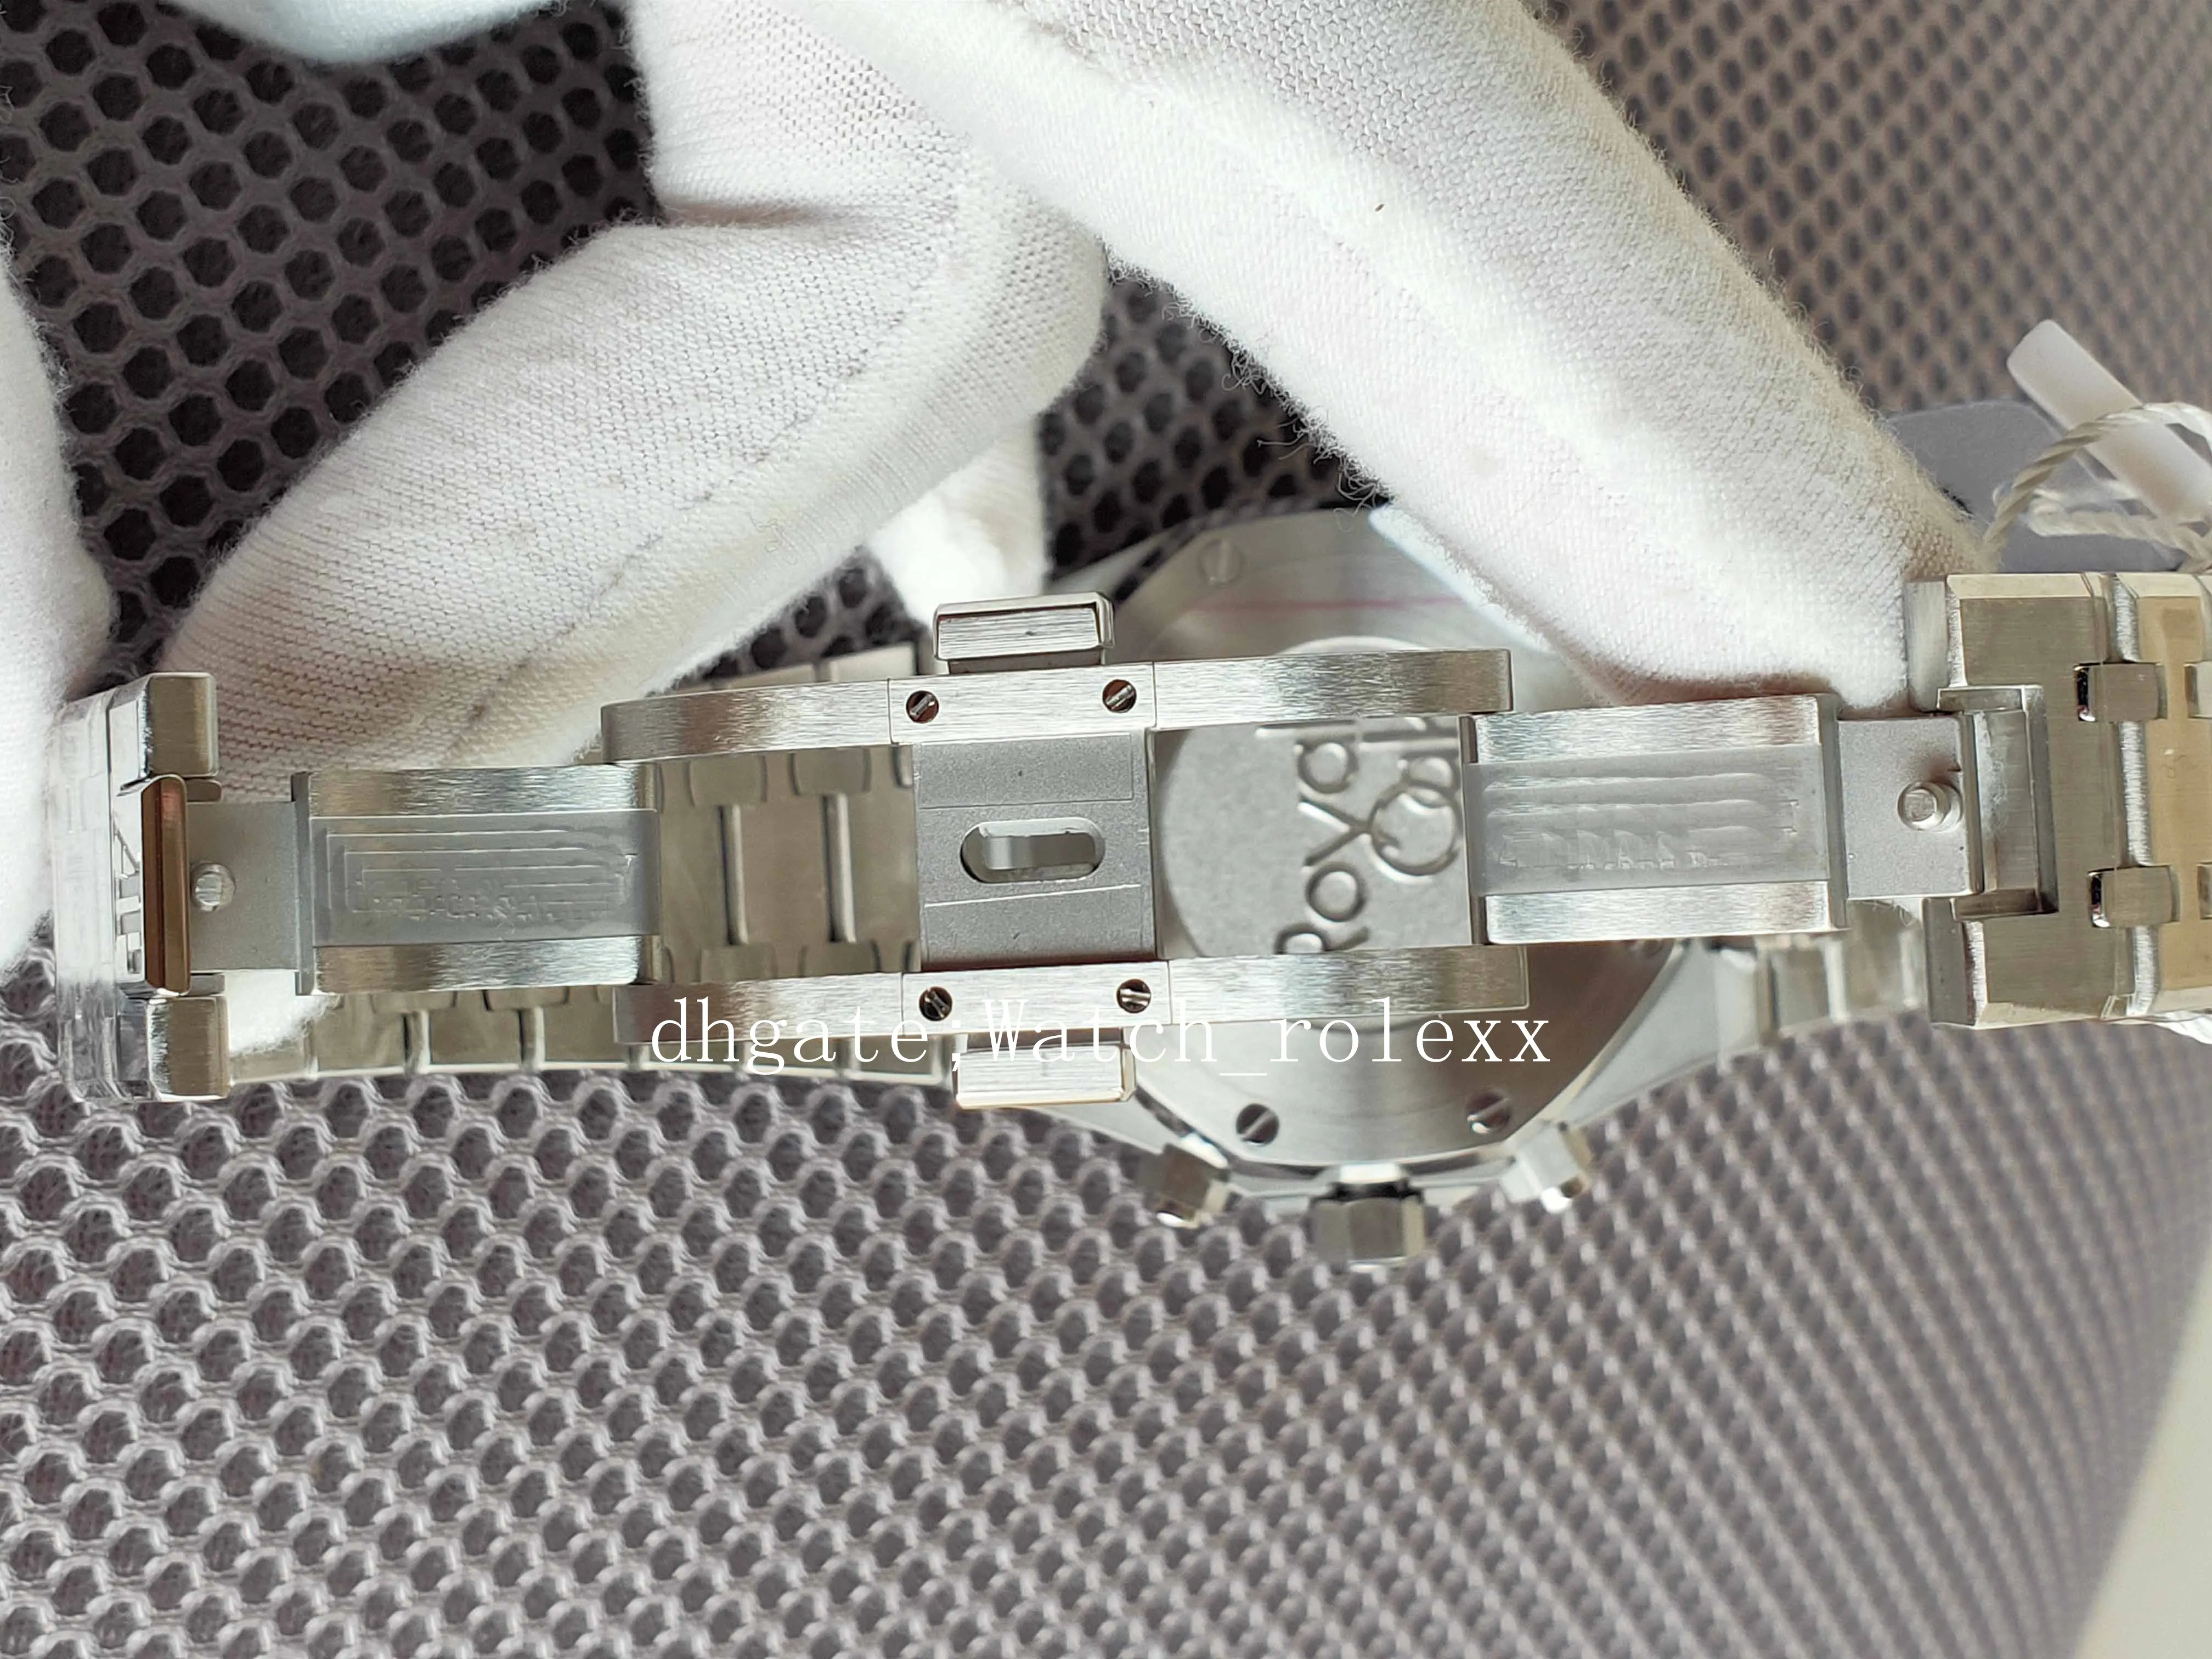 Heren super topkwaliteit horloges chronograaf Workin OM Maker 40 mm Cosmograph roestvrij CAL 7750 eta uurwerk automatisch heren Beze237m